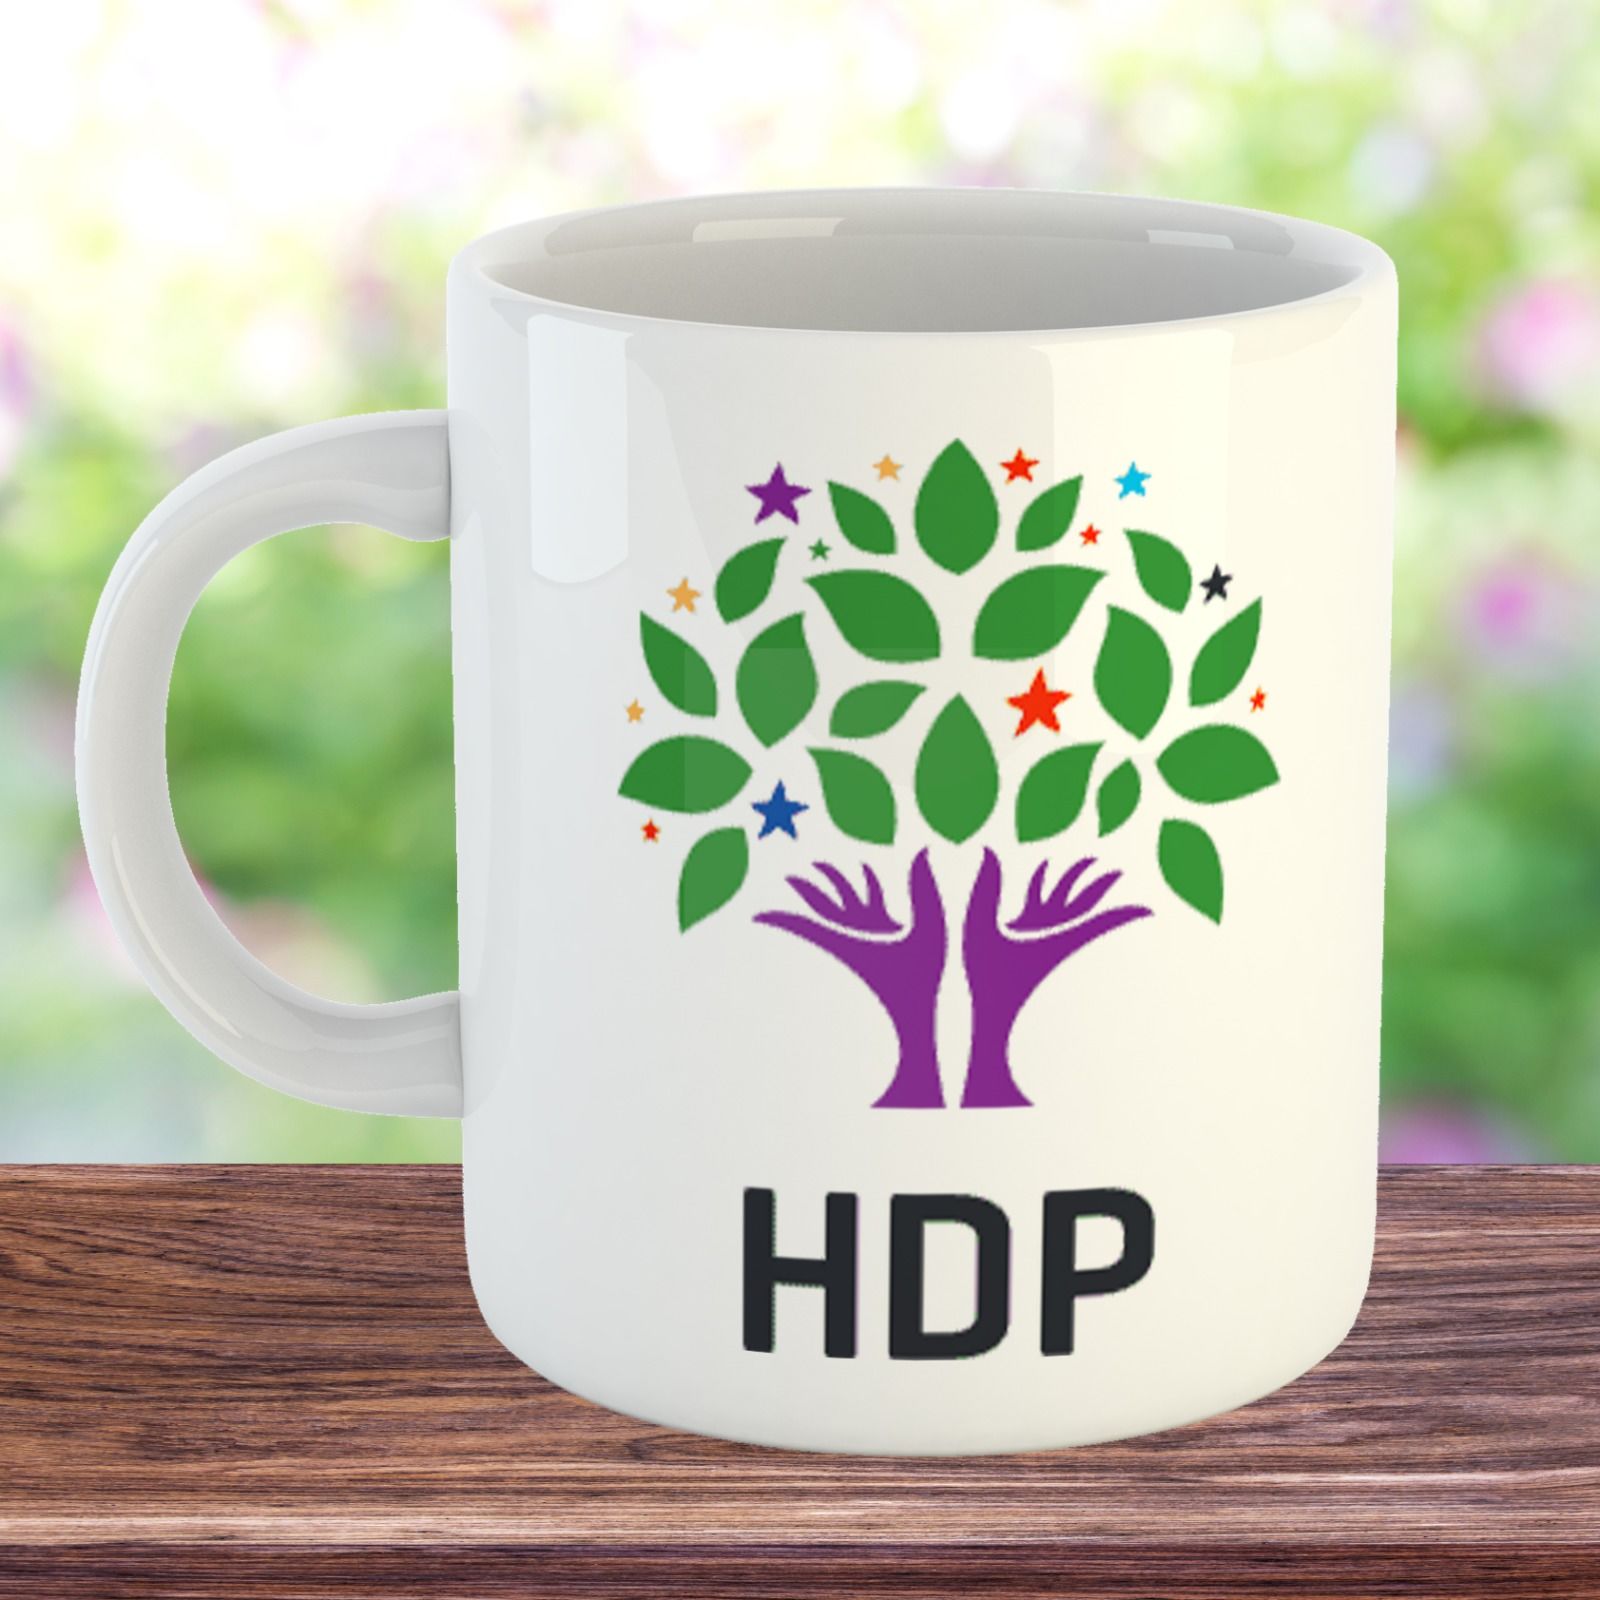 HDP Tasarımlı Porselen Kupa Bardak - HDP Kupası